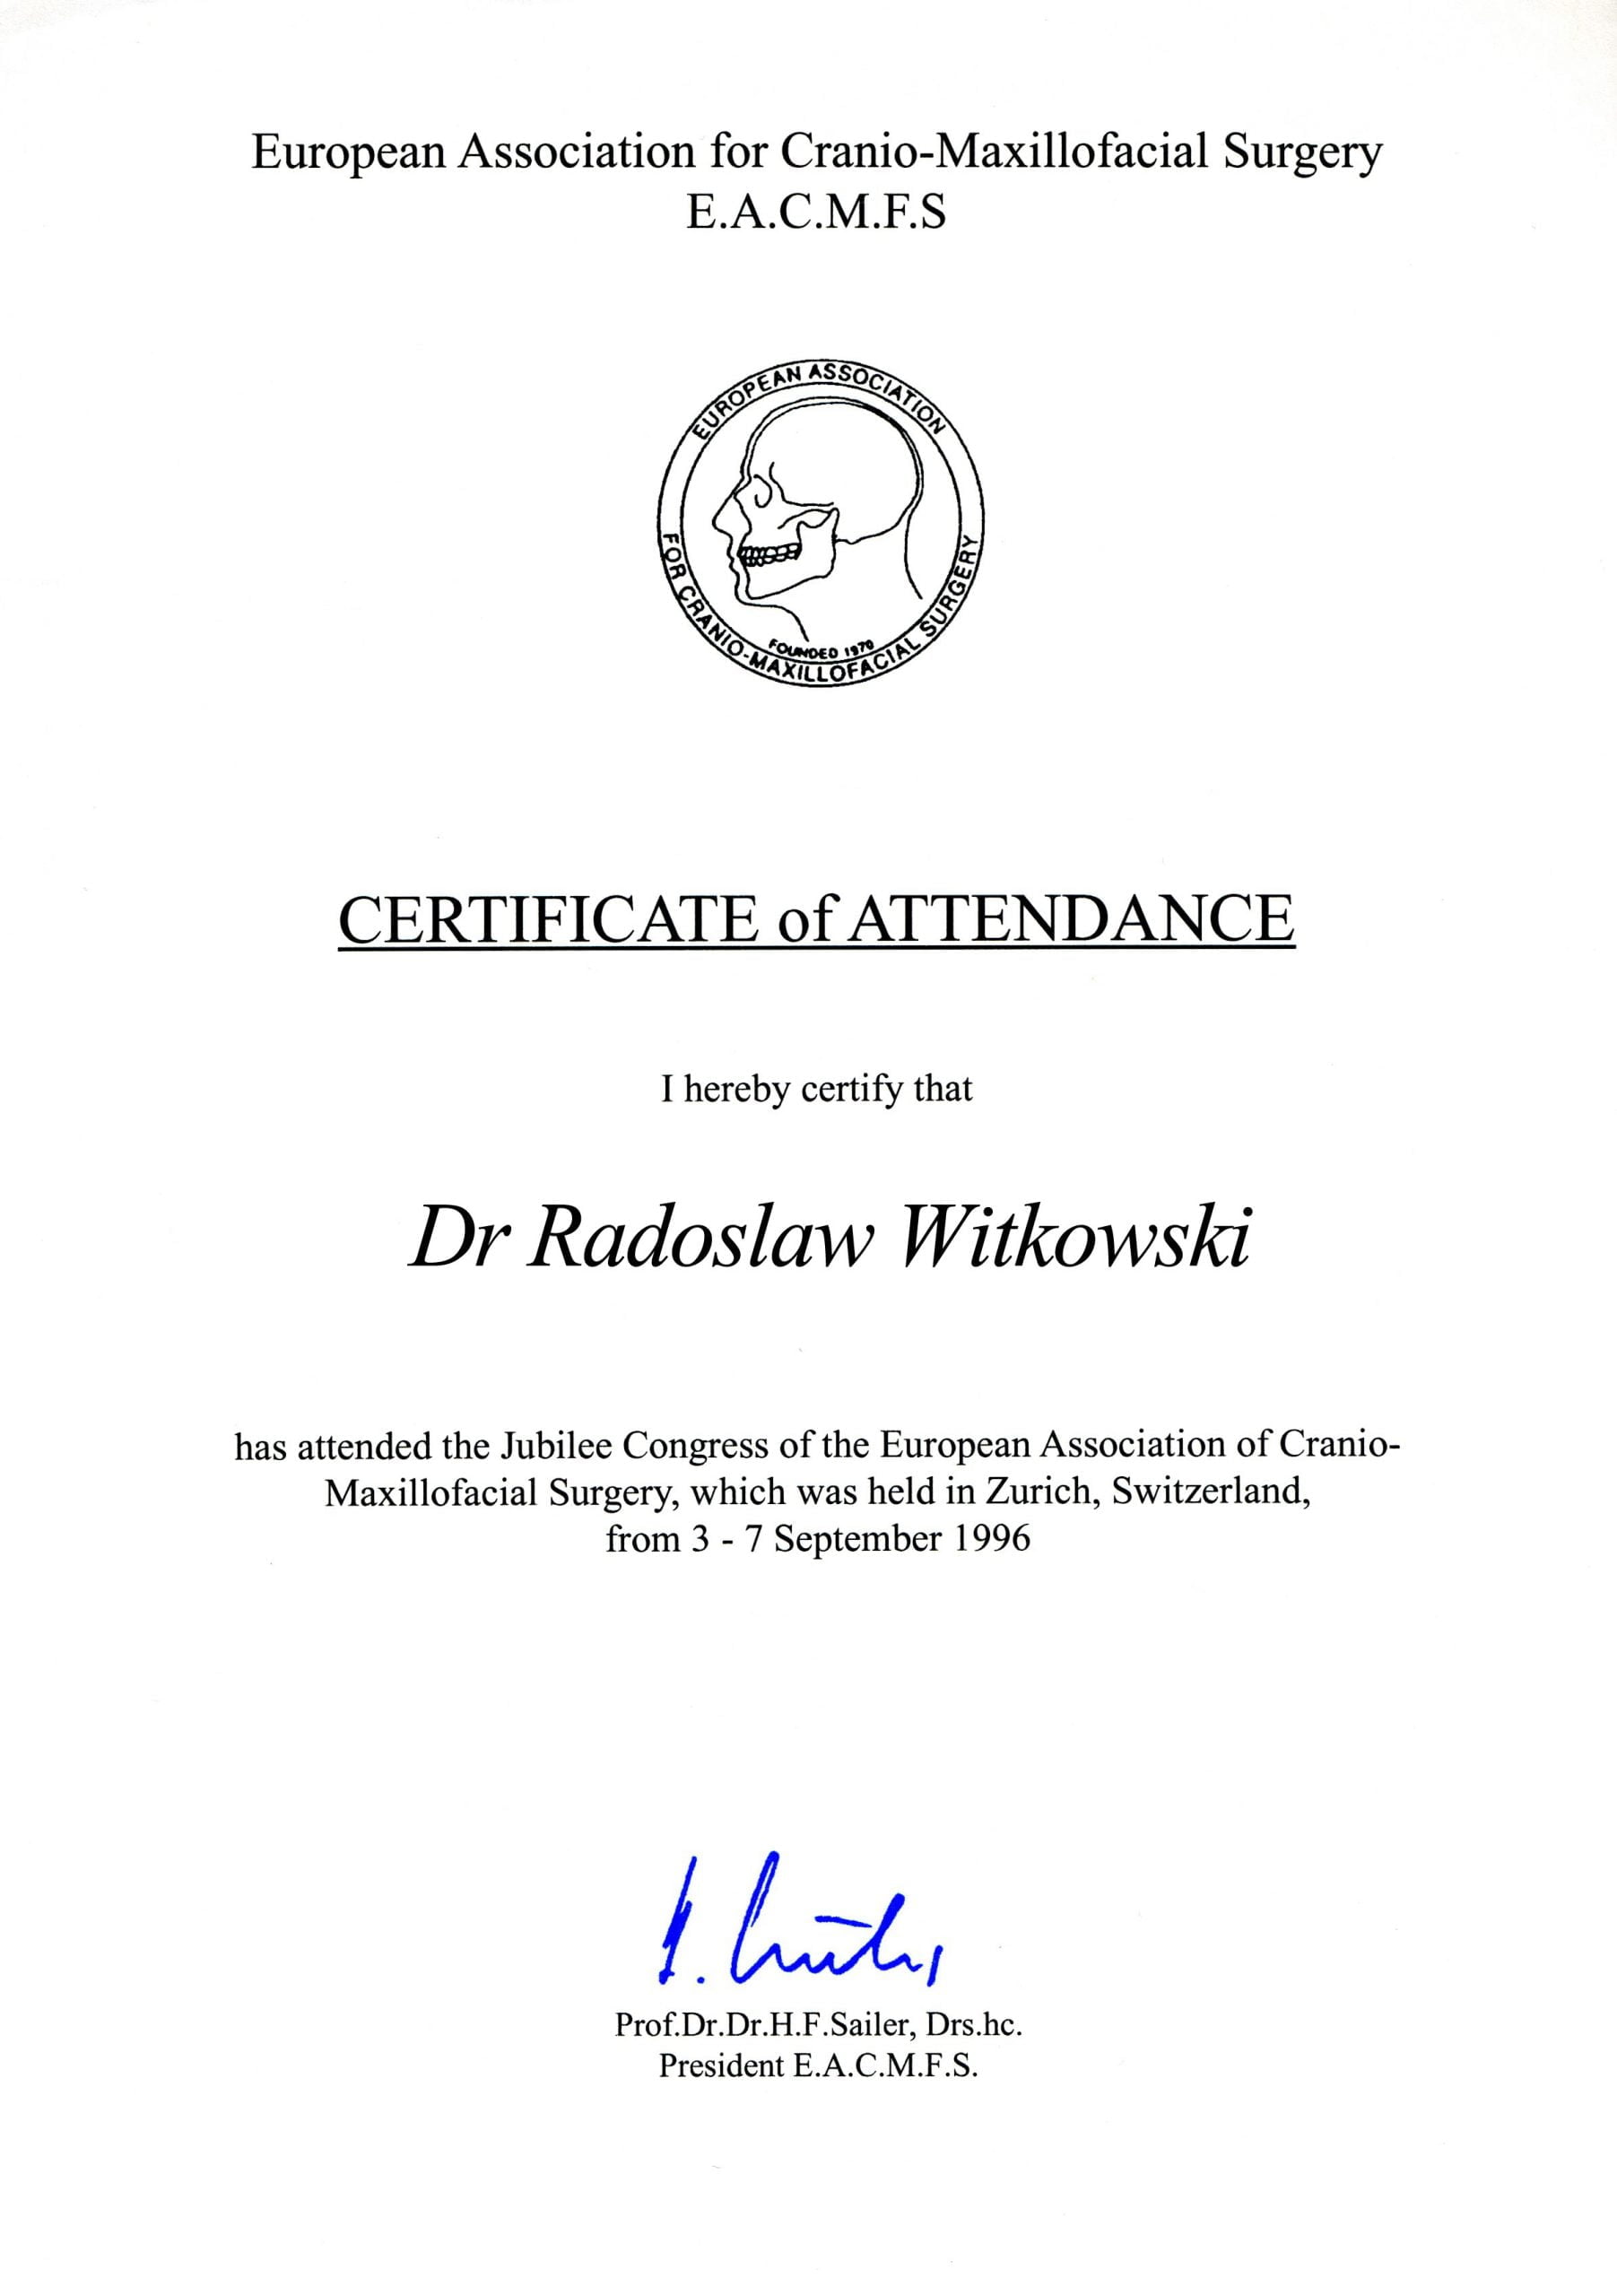 Radosław Witkowski certyfikat 9